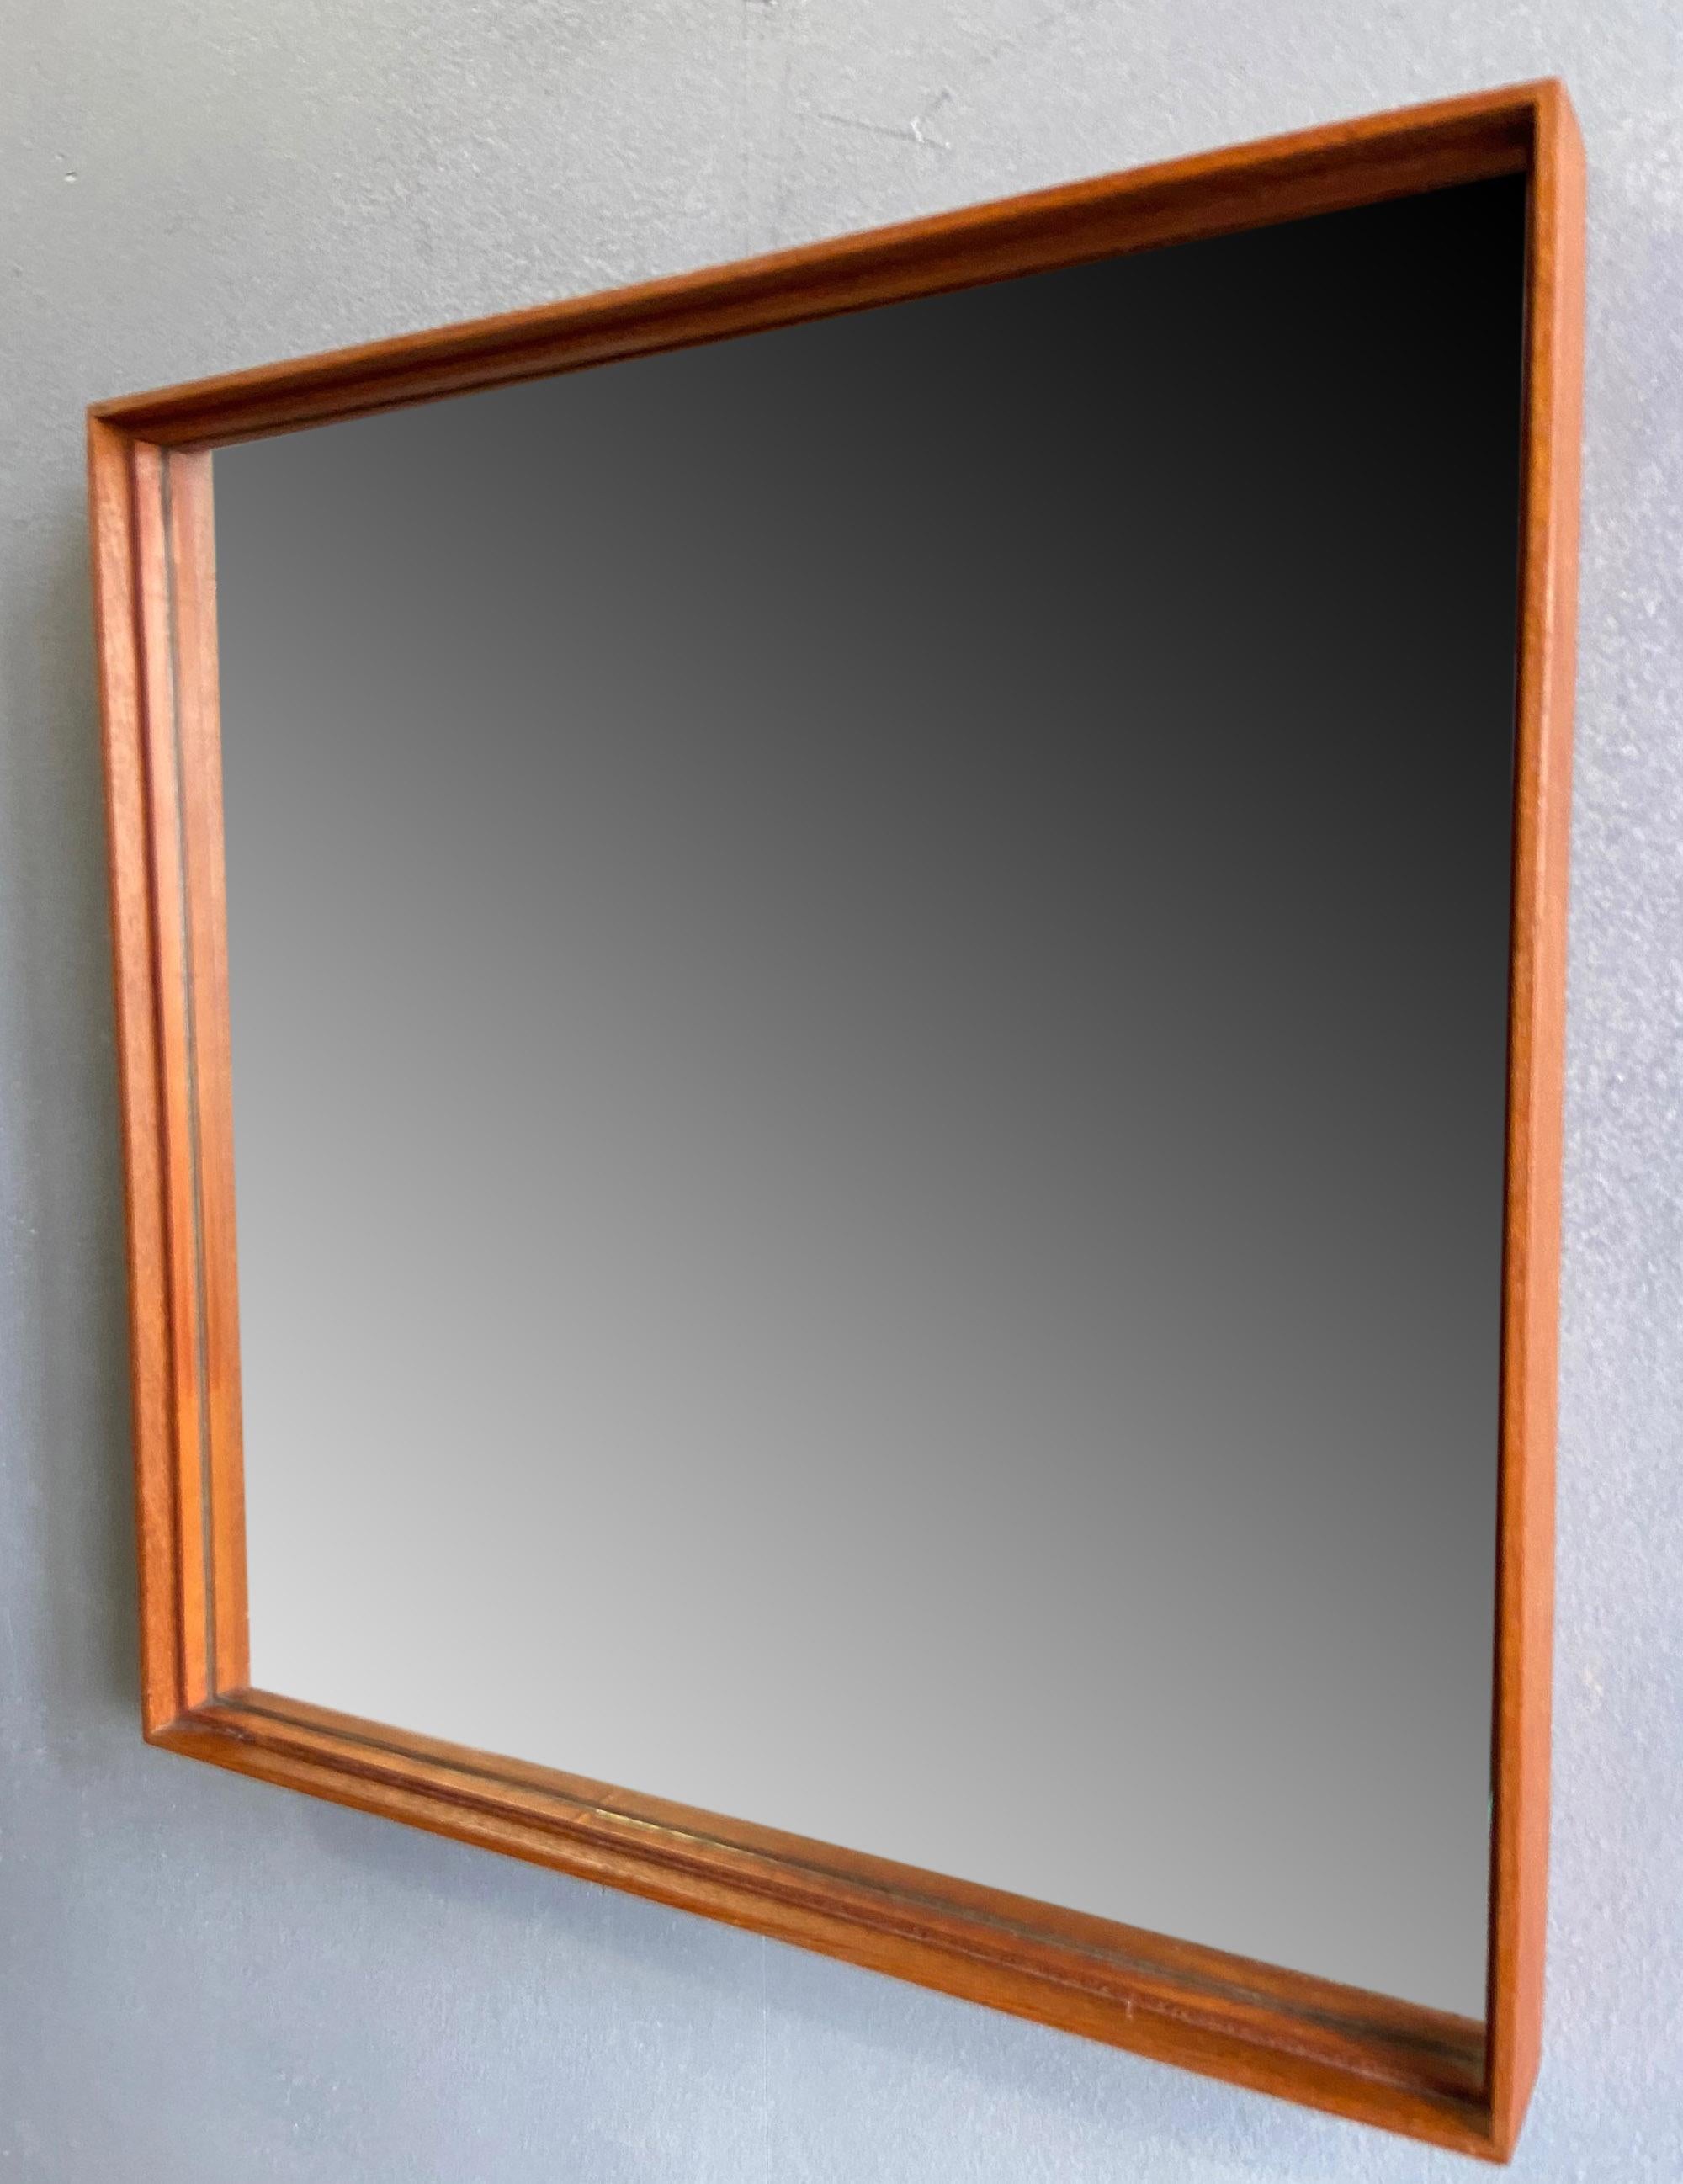 Midcentury Teak Mirror by Uno & Osten Kristiansson for Glas Mäster For Sale 1